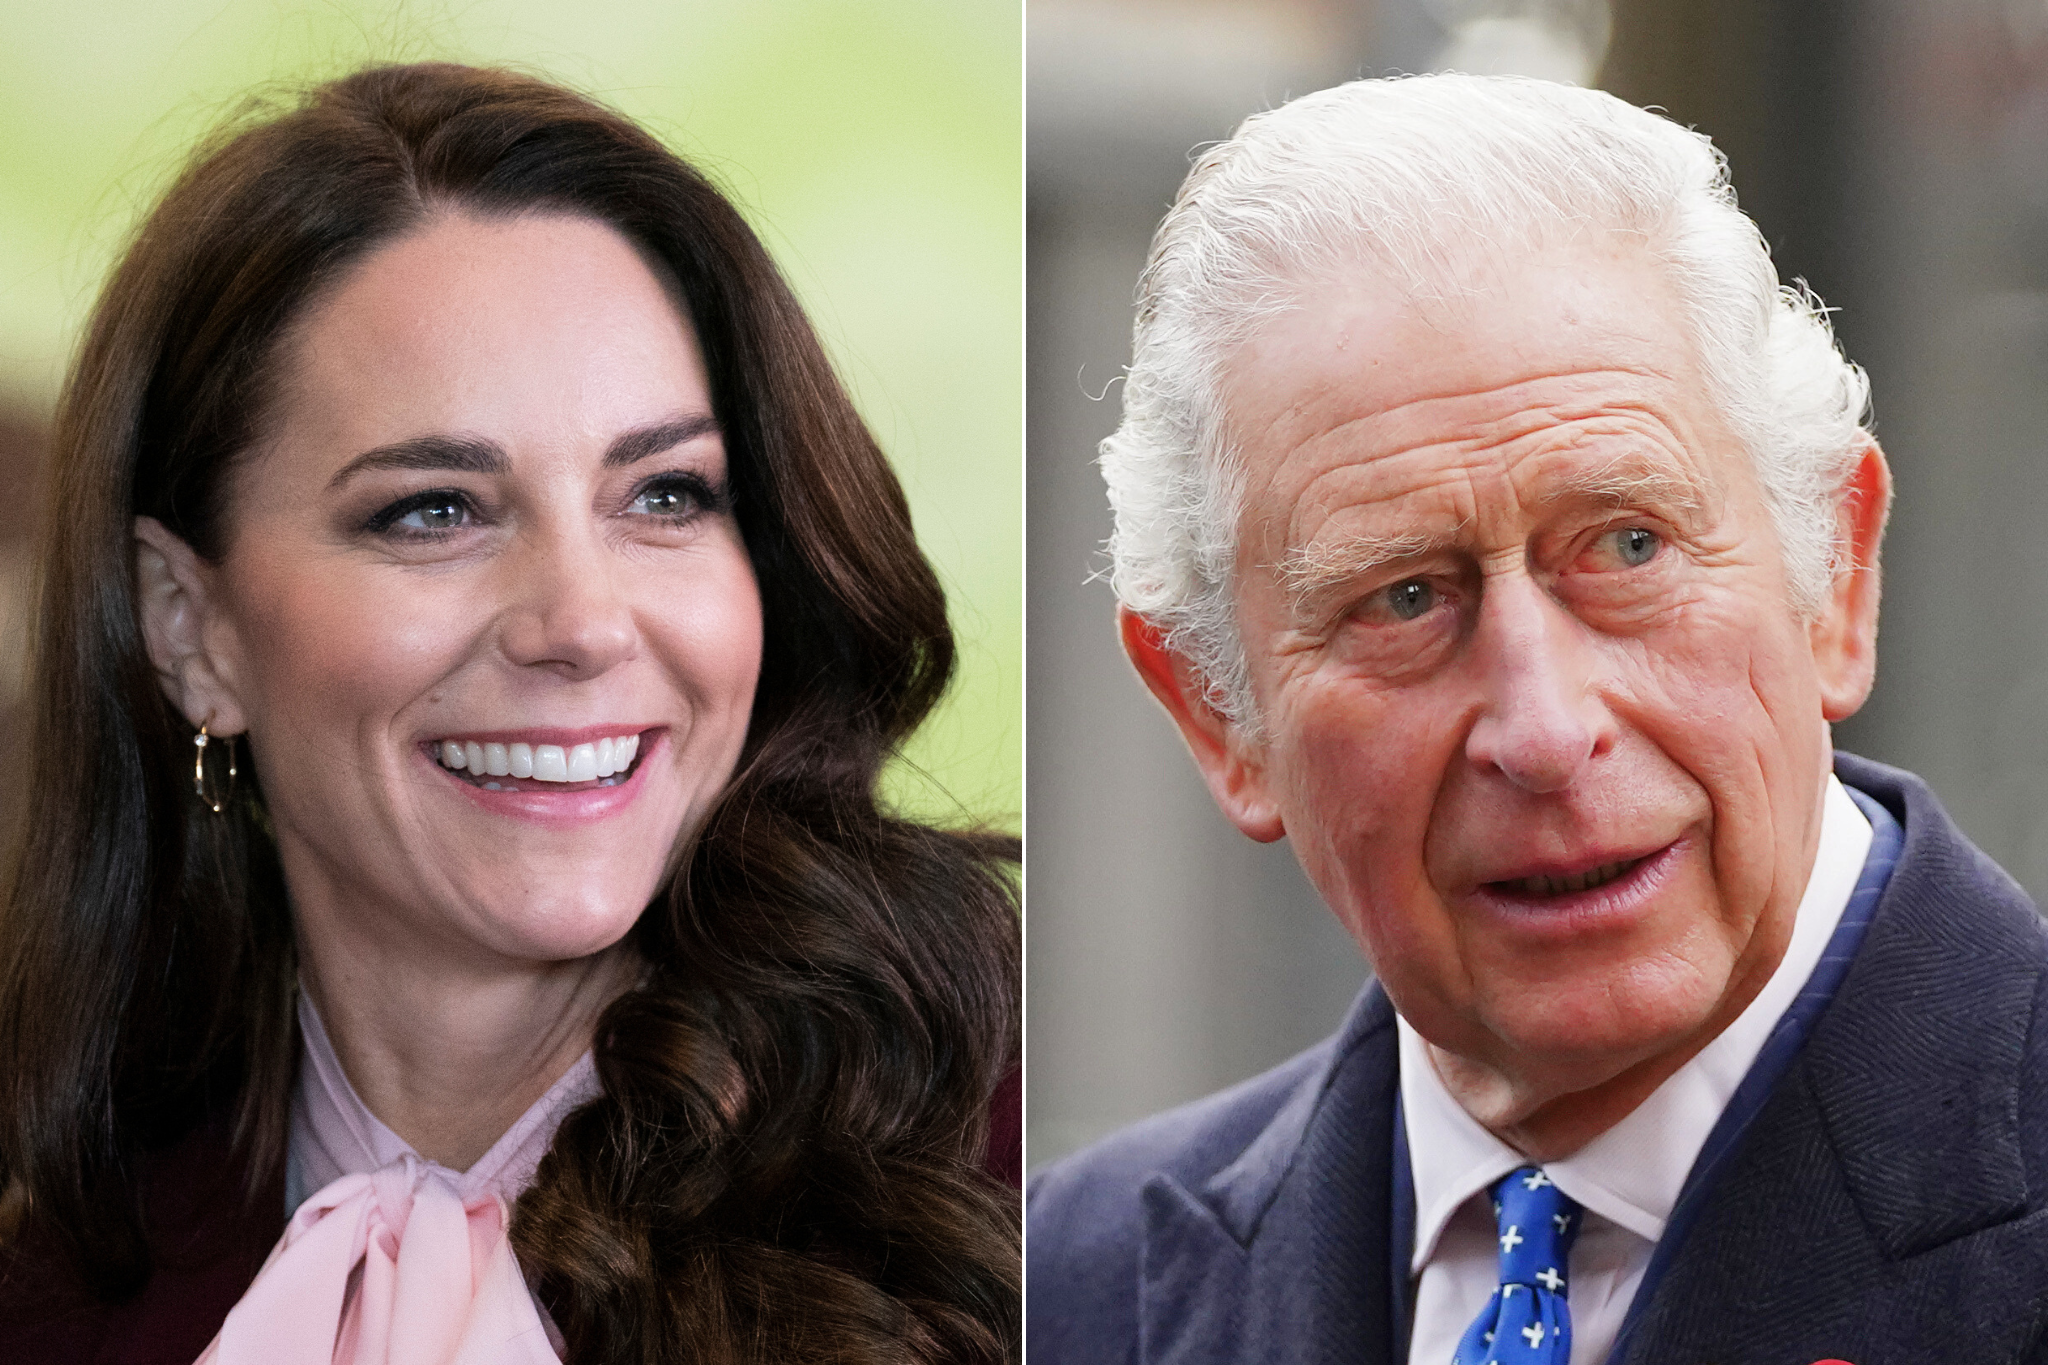 König Charles und Kate Middleton werden gemeinsam bei der Trooping the Colour-Parade auftreten